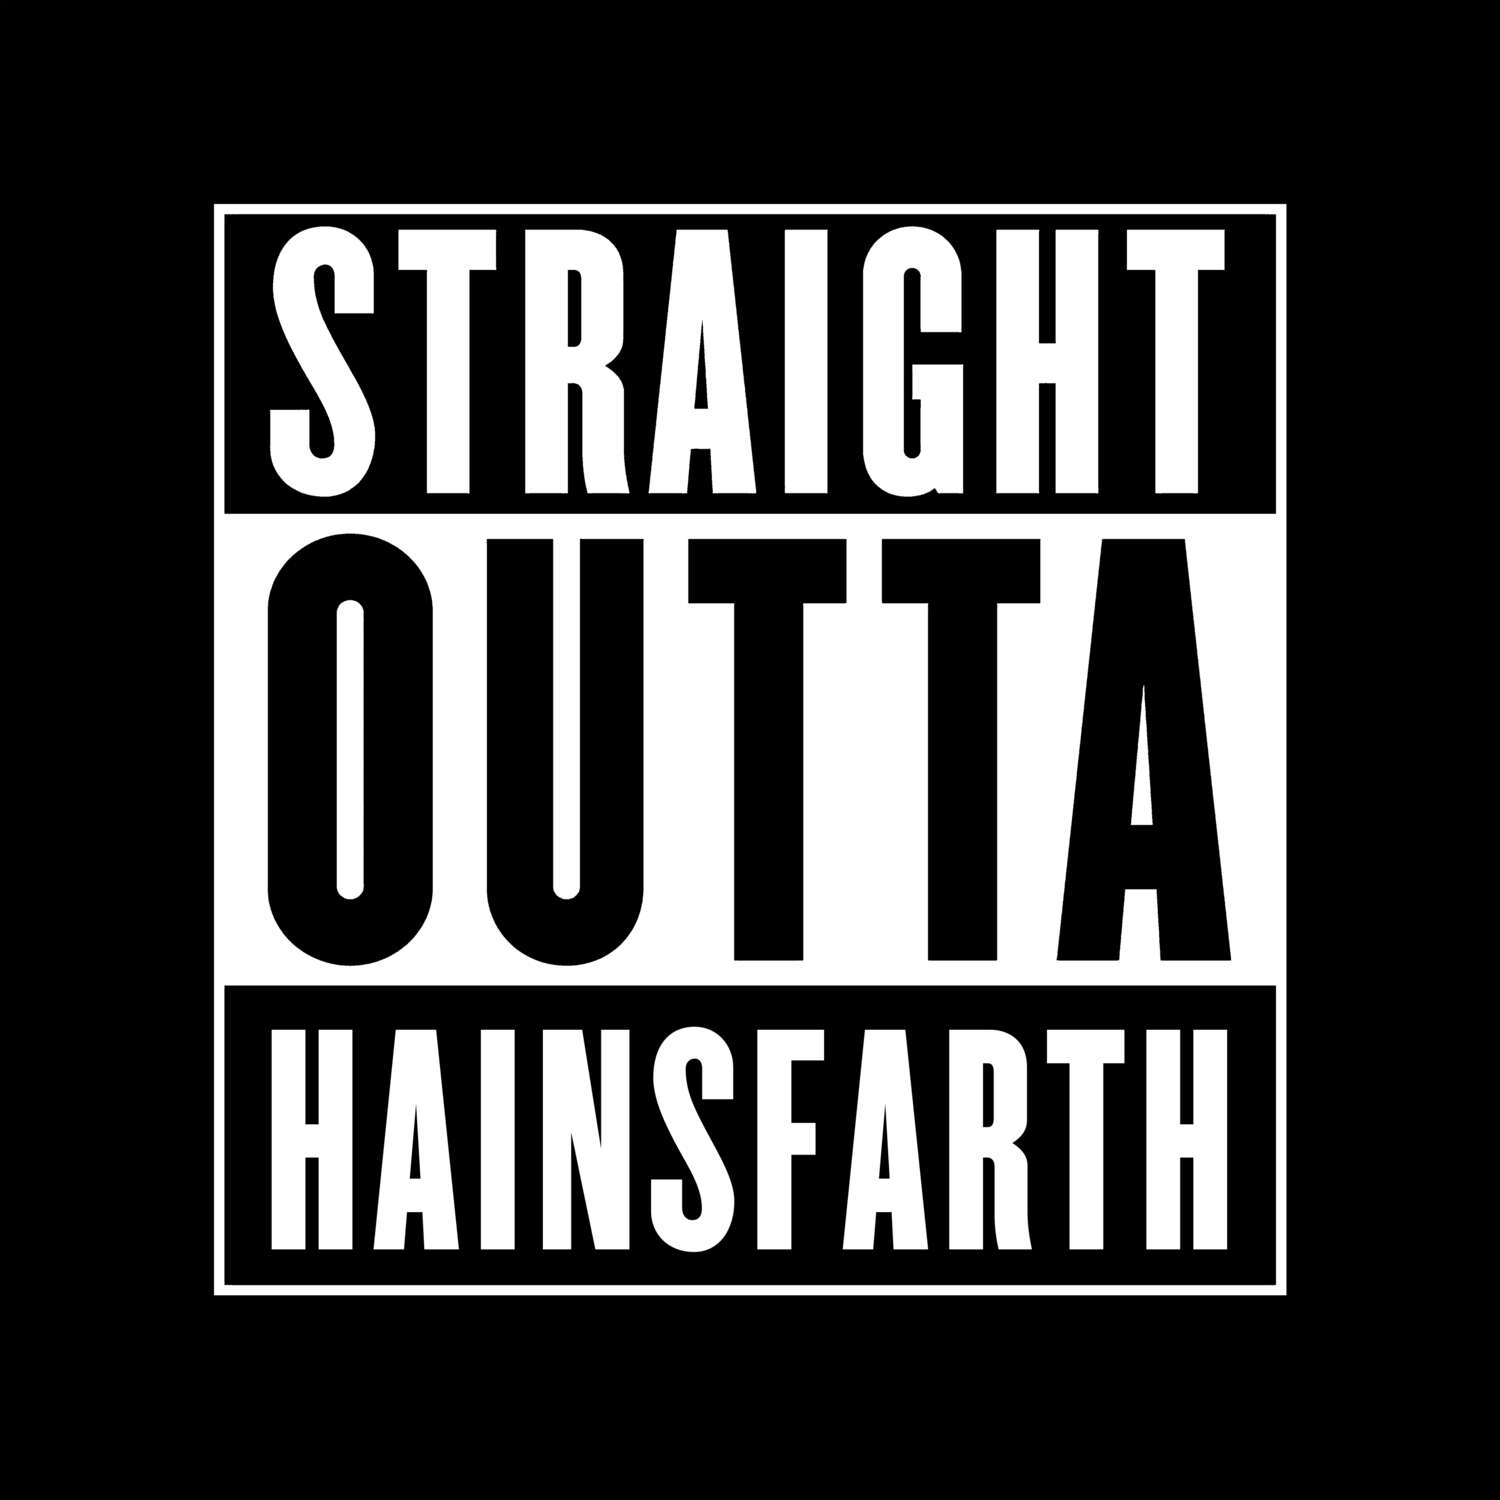 Hainsfarth T-Shirt »Straight Outta«